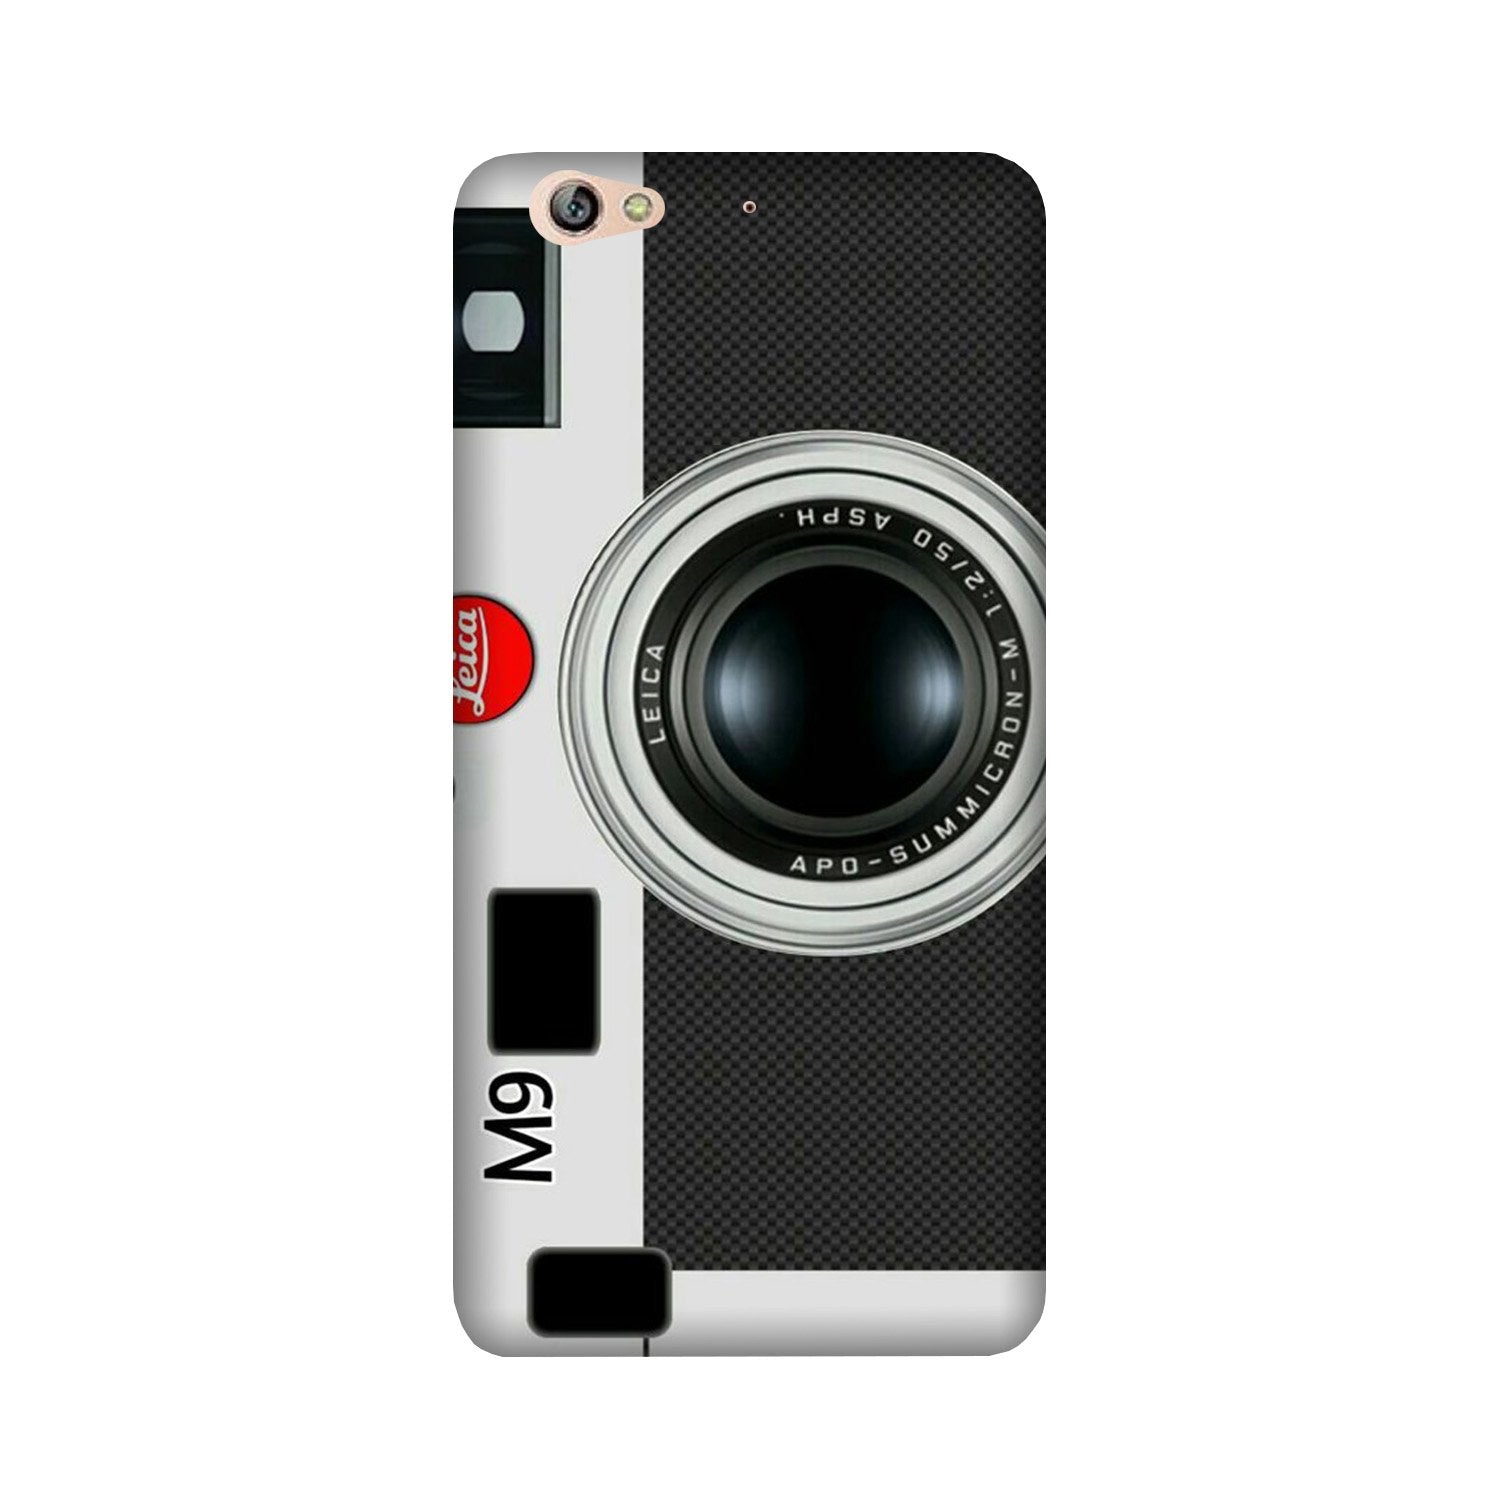 Camera Case for Gionee S6 (Design No. 257)